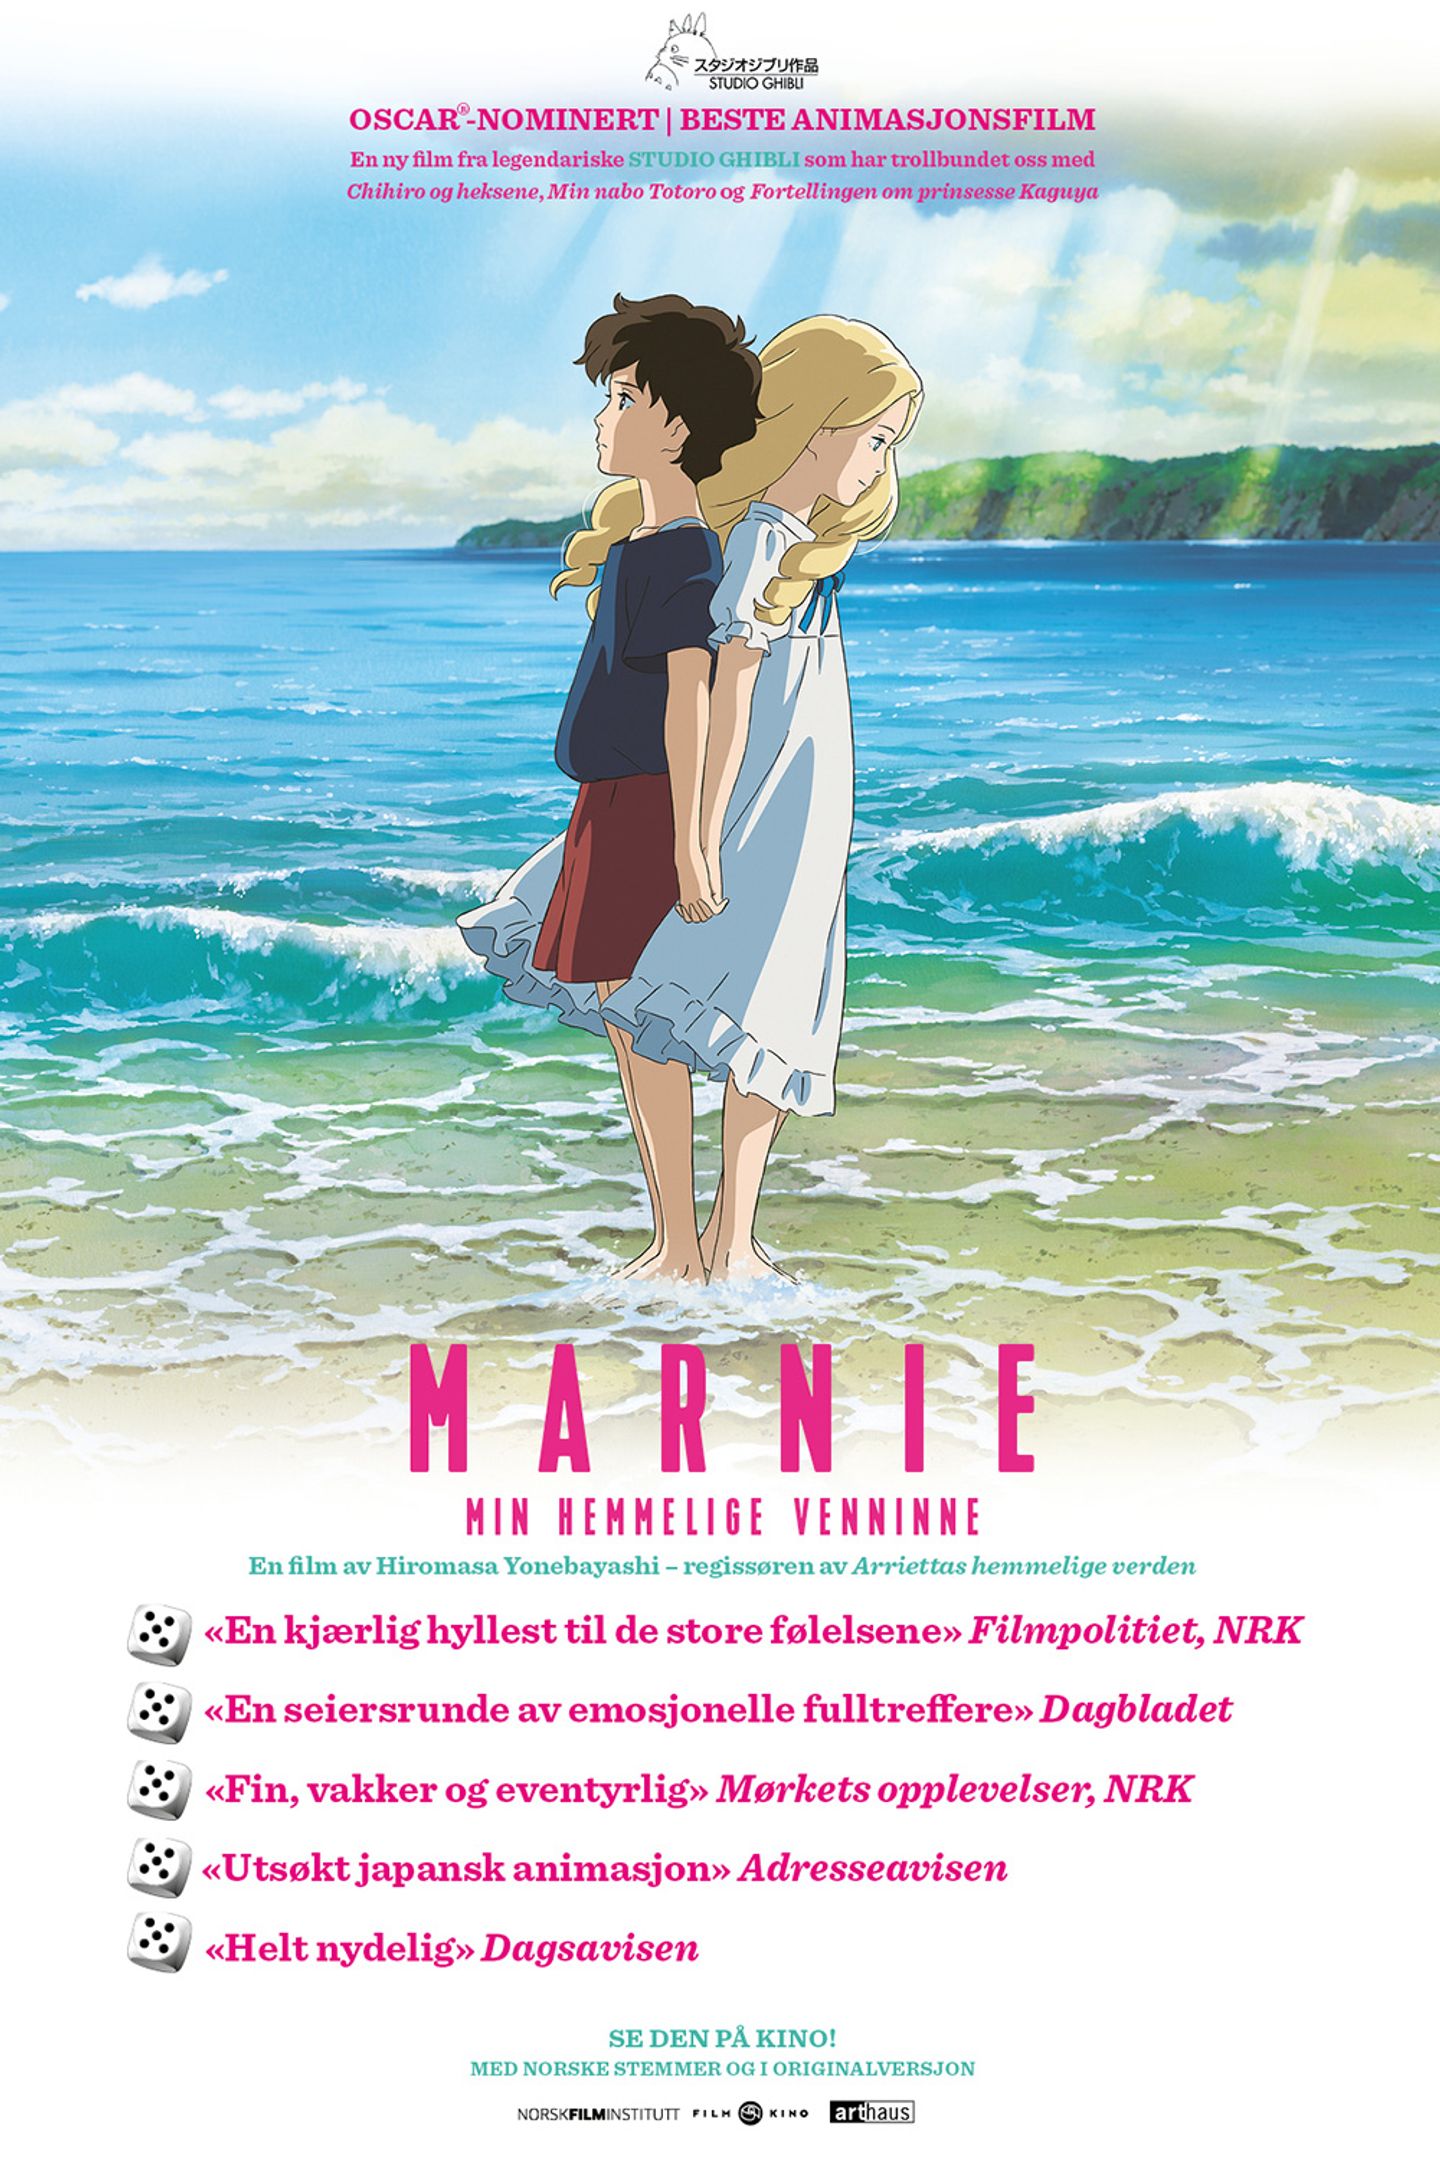 Plakat for 'Marnie - min hemmelige venninne'